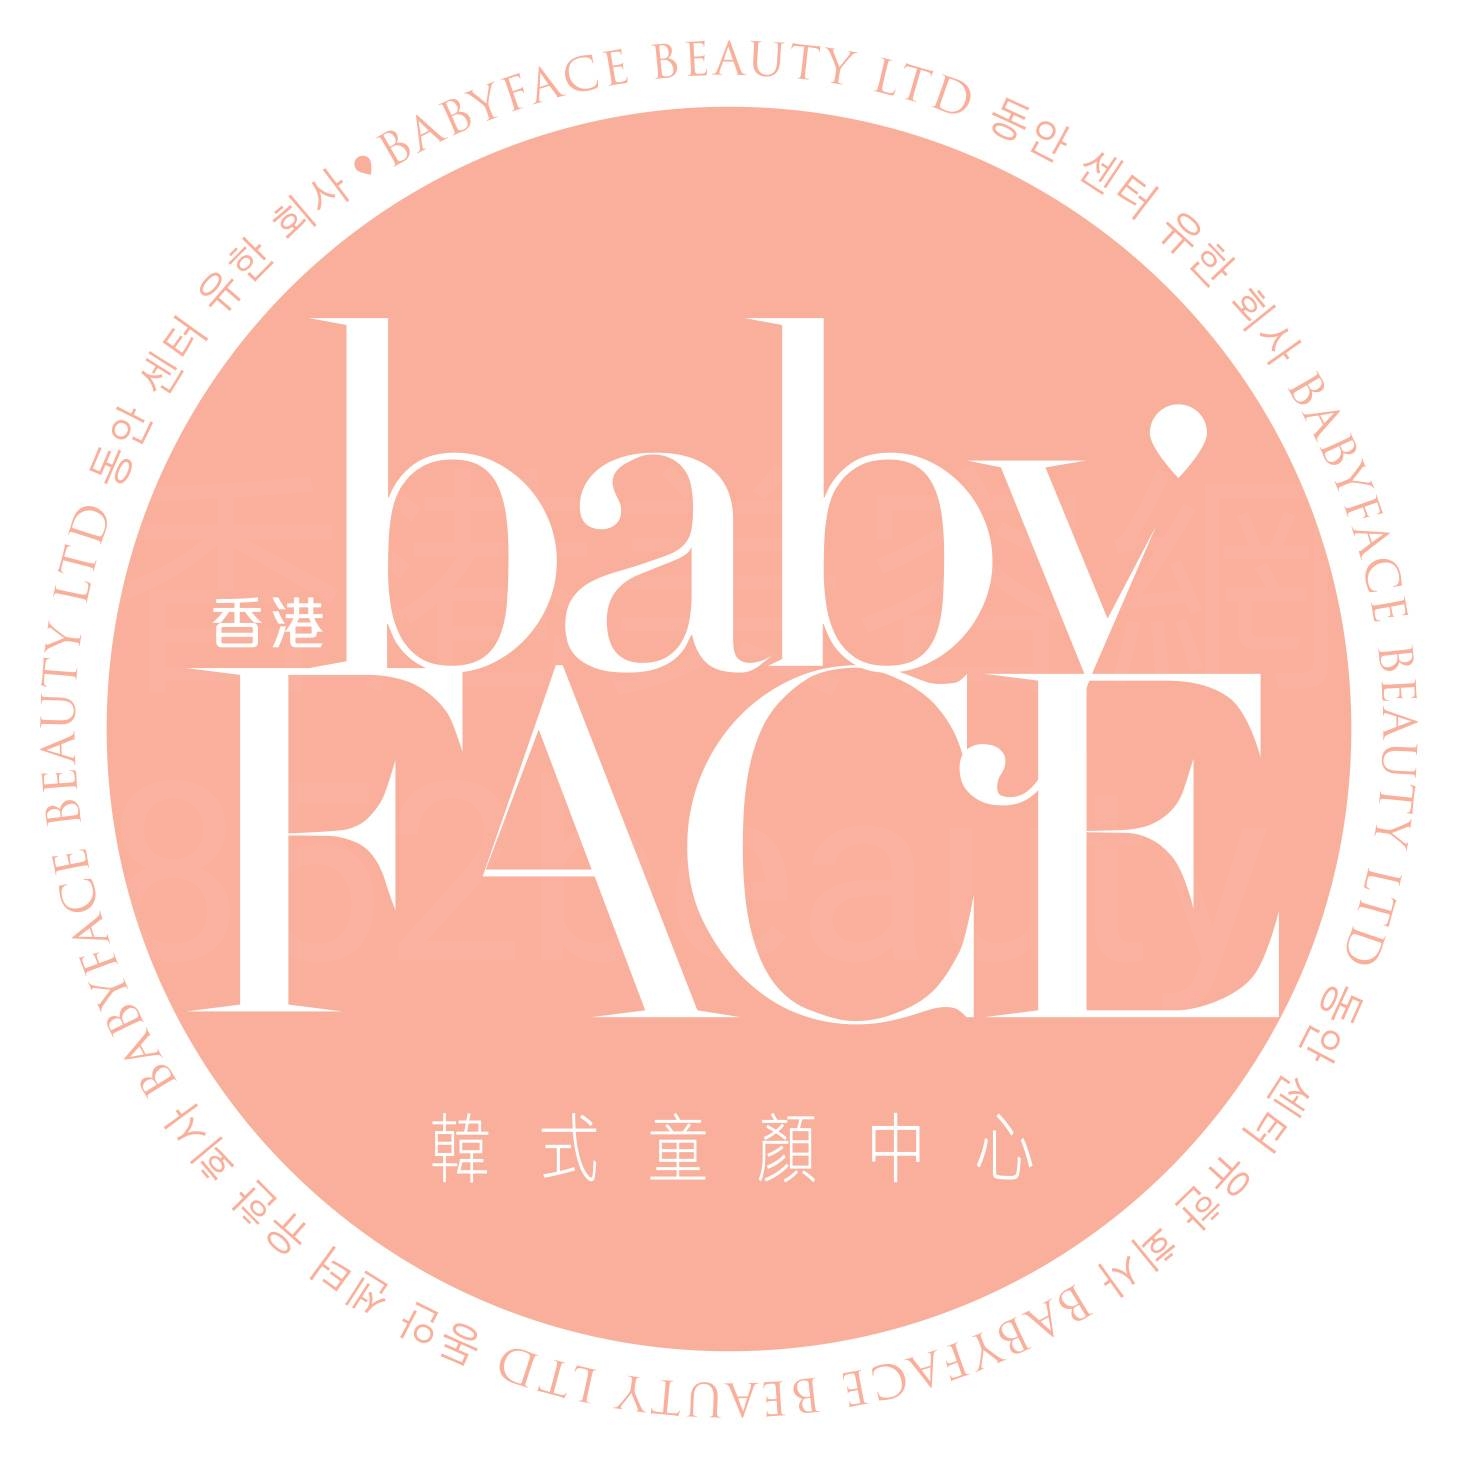 修眉/眼睫毛: babyFACE Beauty (銅鑼灣店)